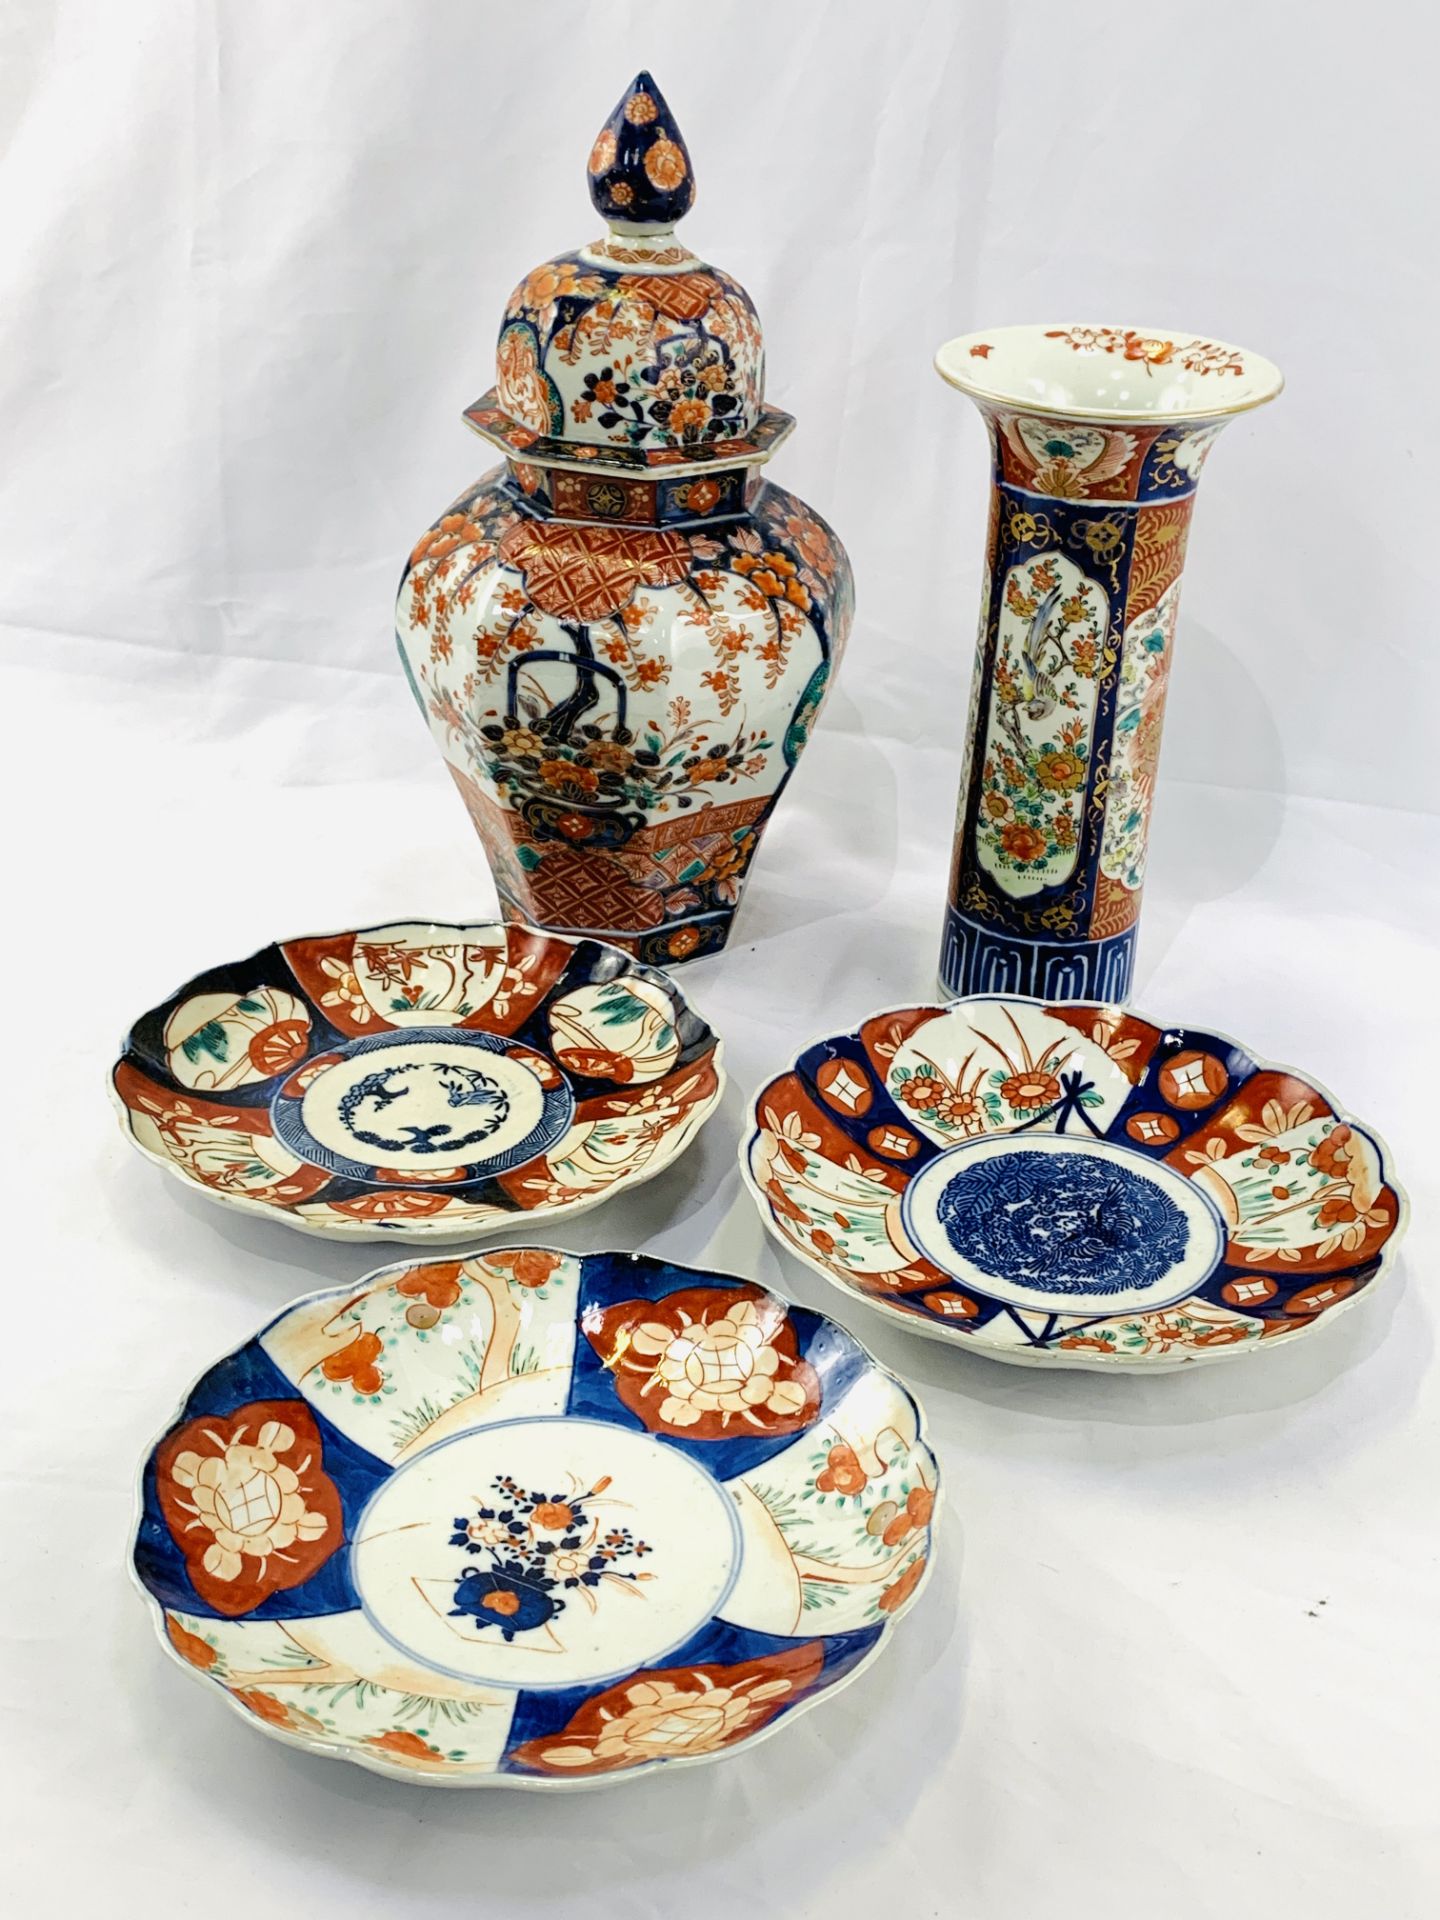 Large lidded Imari jar, Imari vase, and three Imari plates - Image 6 of 6